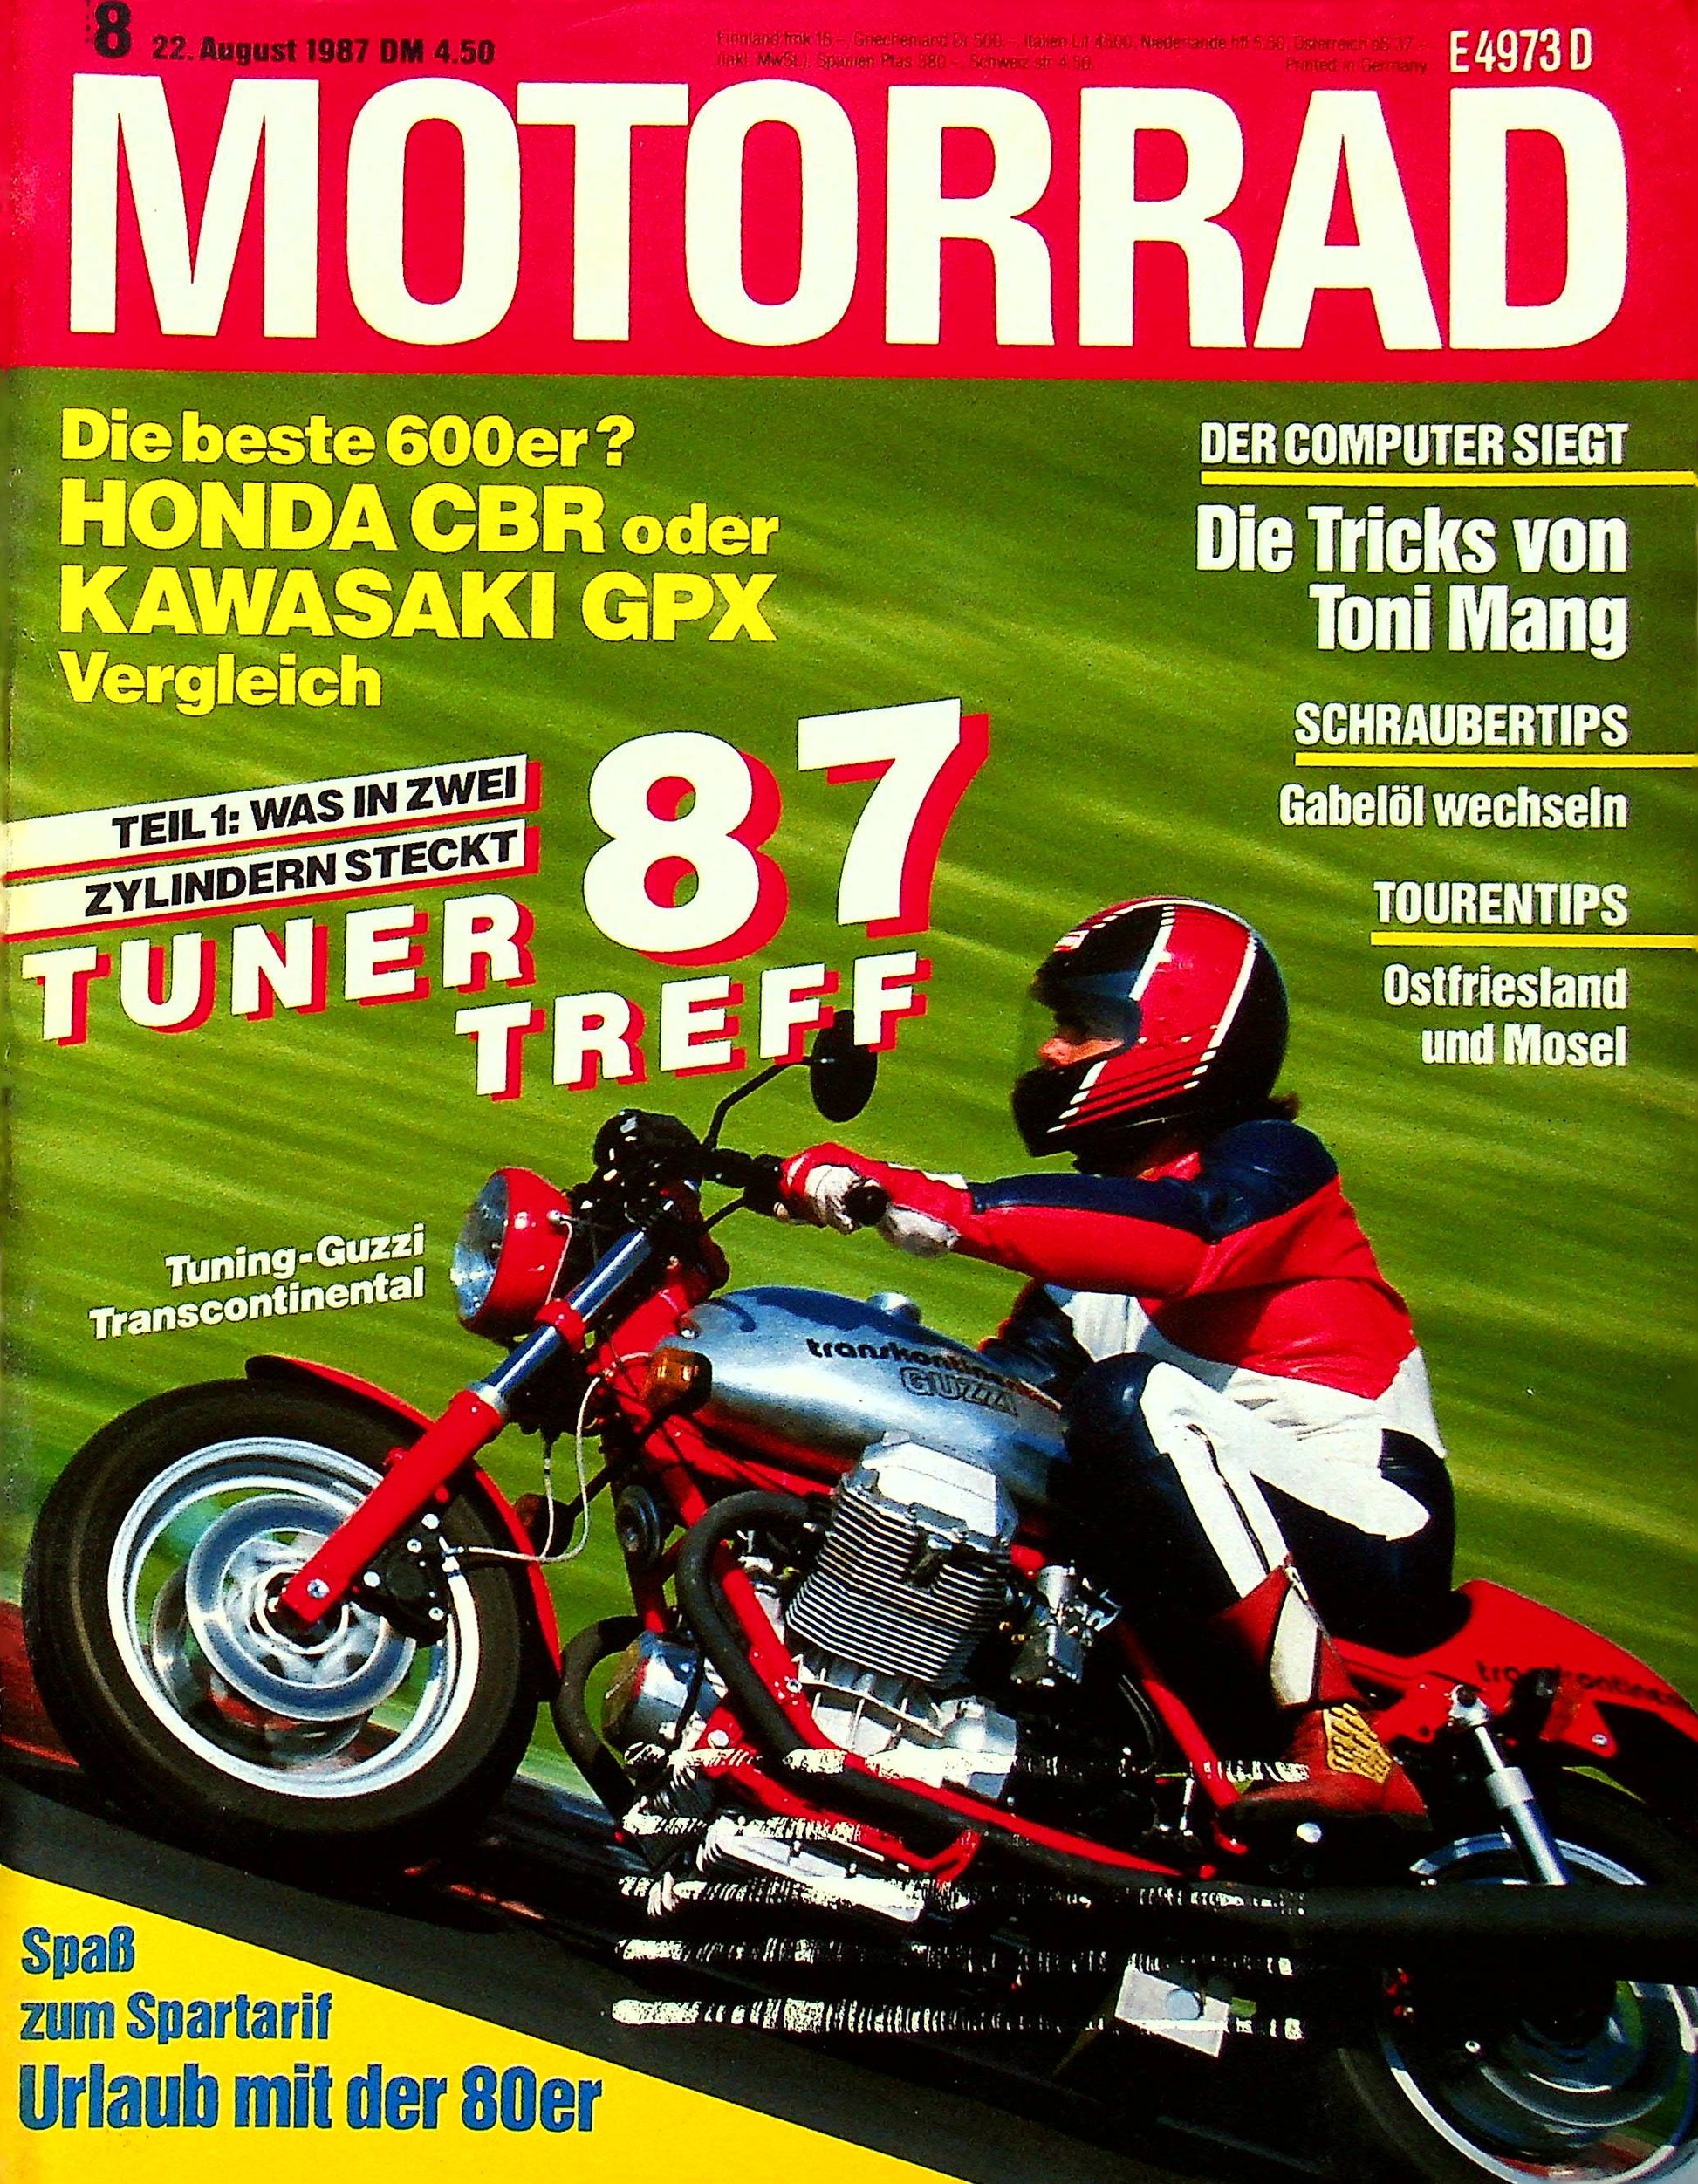 Motorrad 18/1987